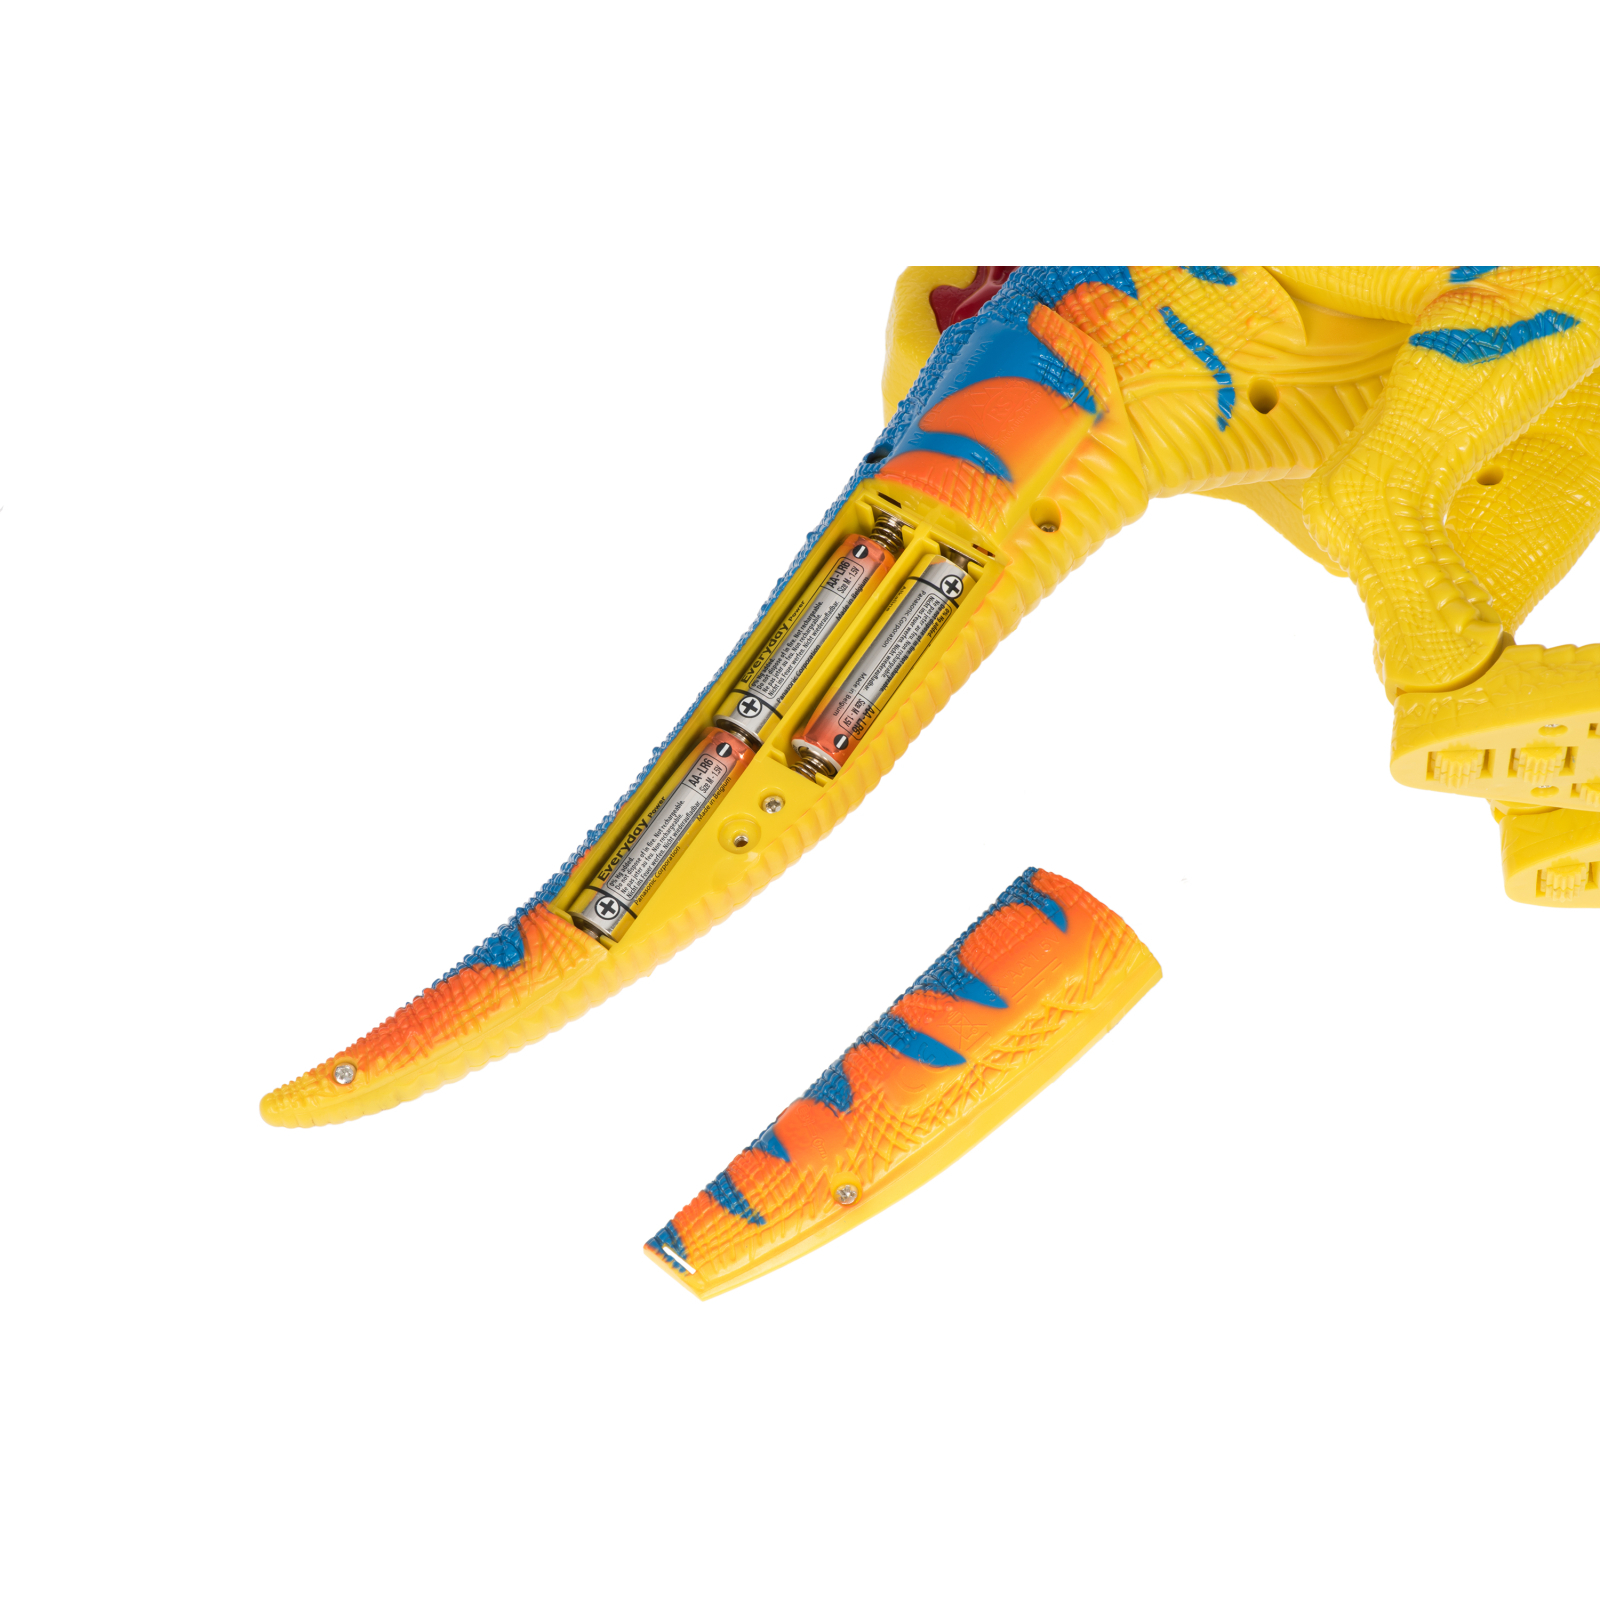 Интерактивная игрушка Same Toy Динозавр Dino World желтый со светом и звуком зеленый (RS6133BUt) изображение 4